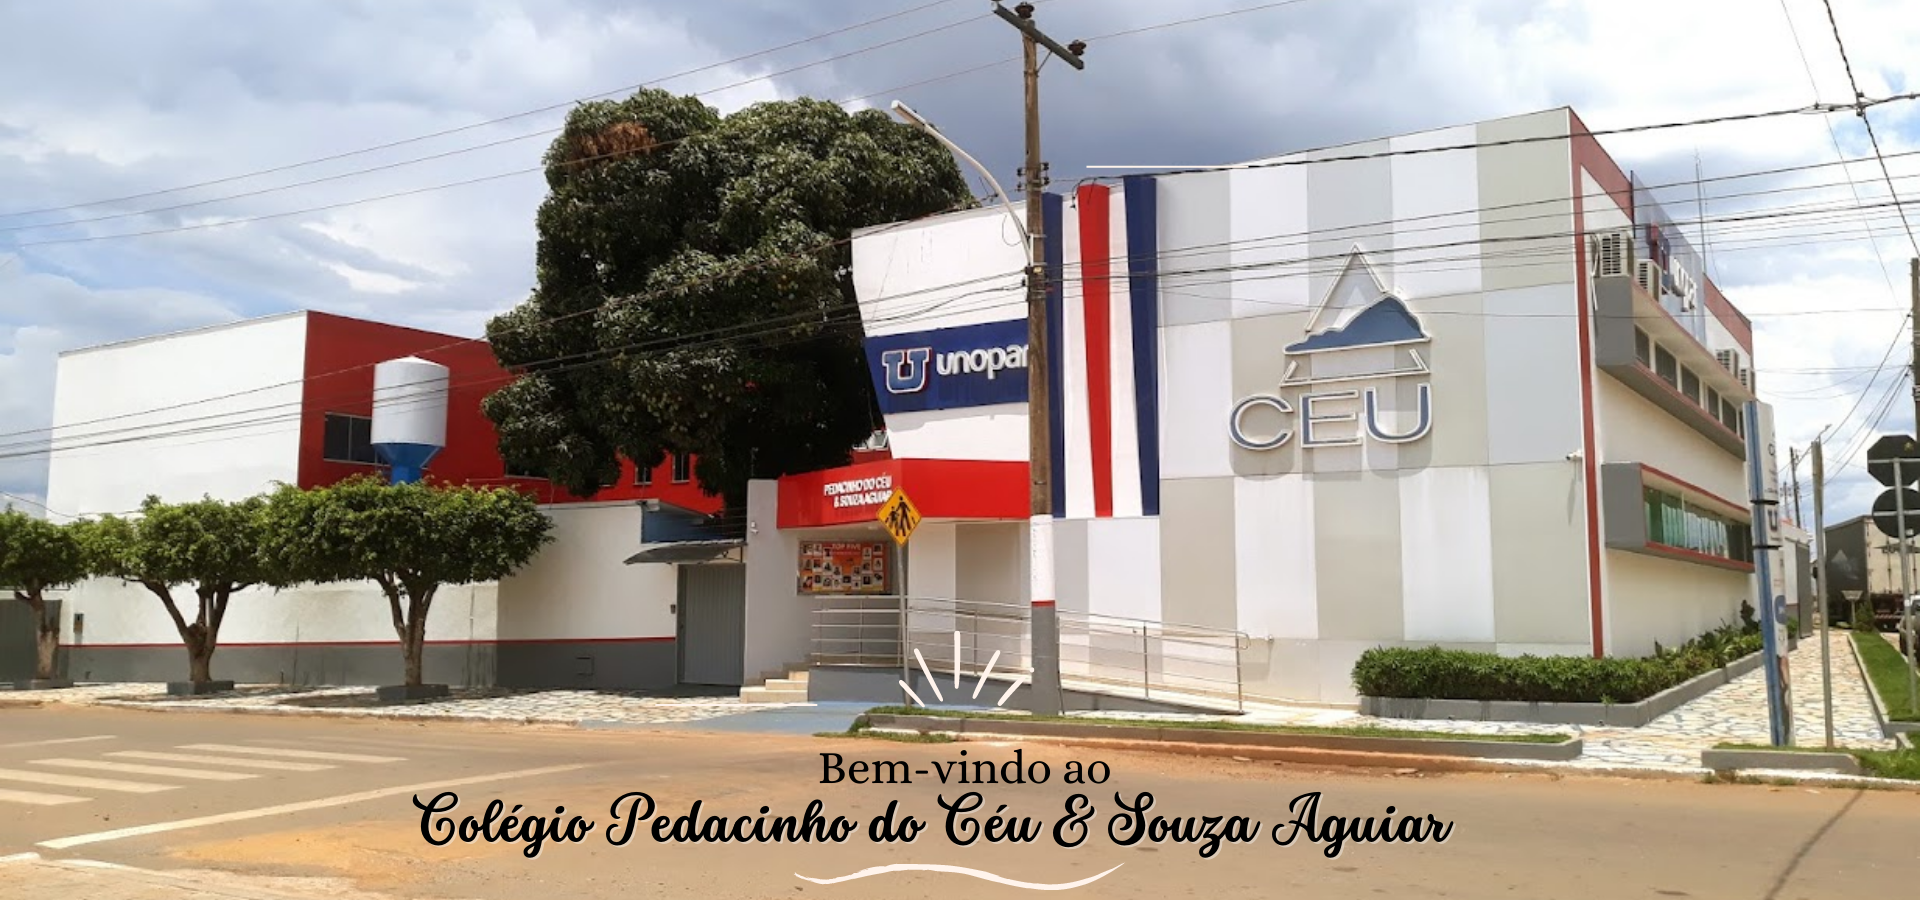 Colégio Pedacinho do Céu & Souza Aguiar (1920 × 900 px)